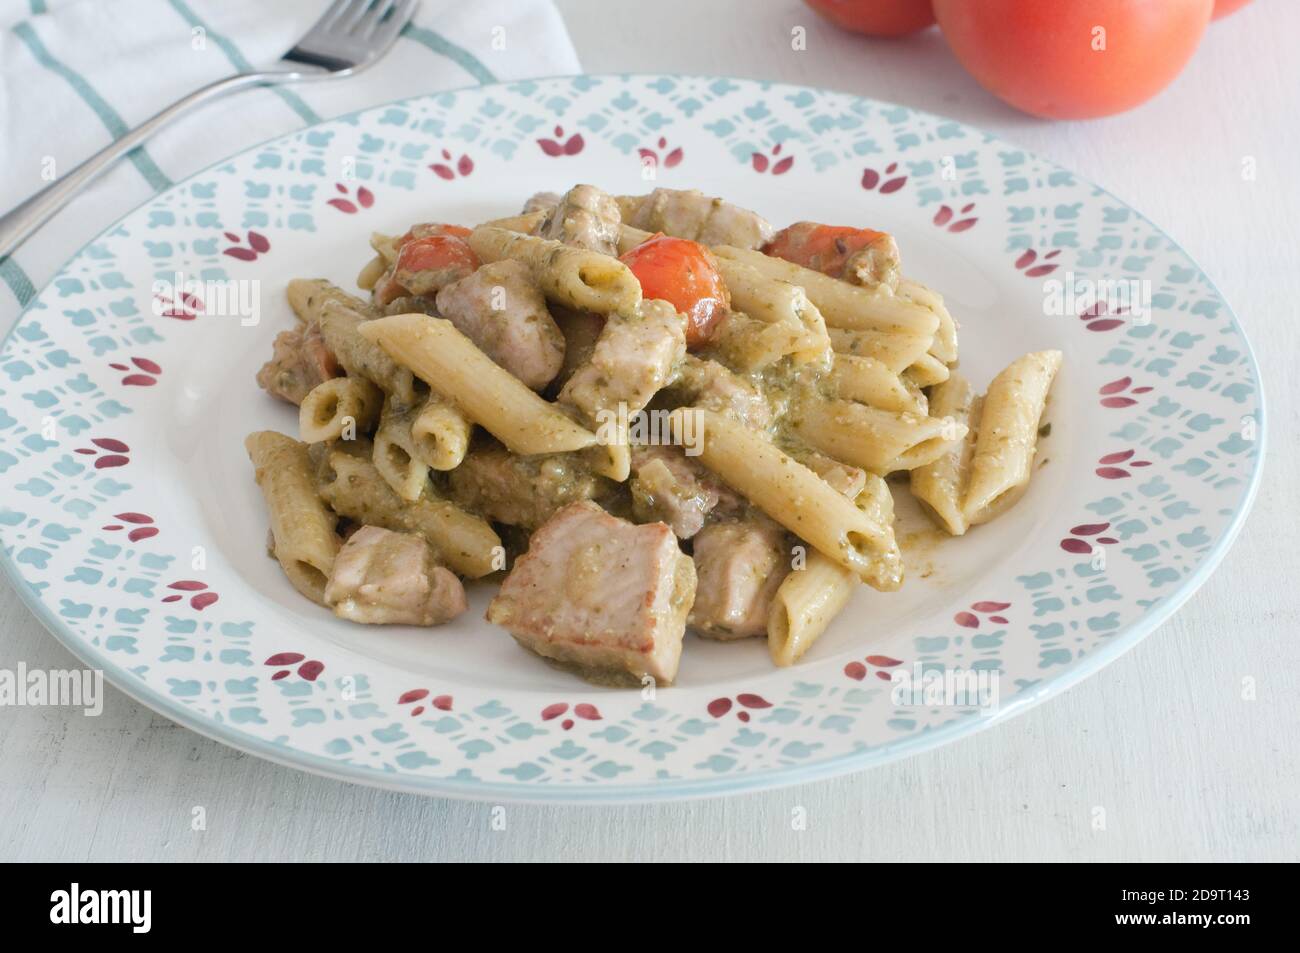 Carlofortina pasta with Genoese pesto and tuna Stock Photo